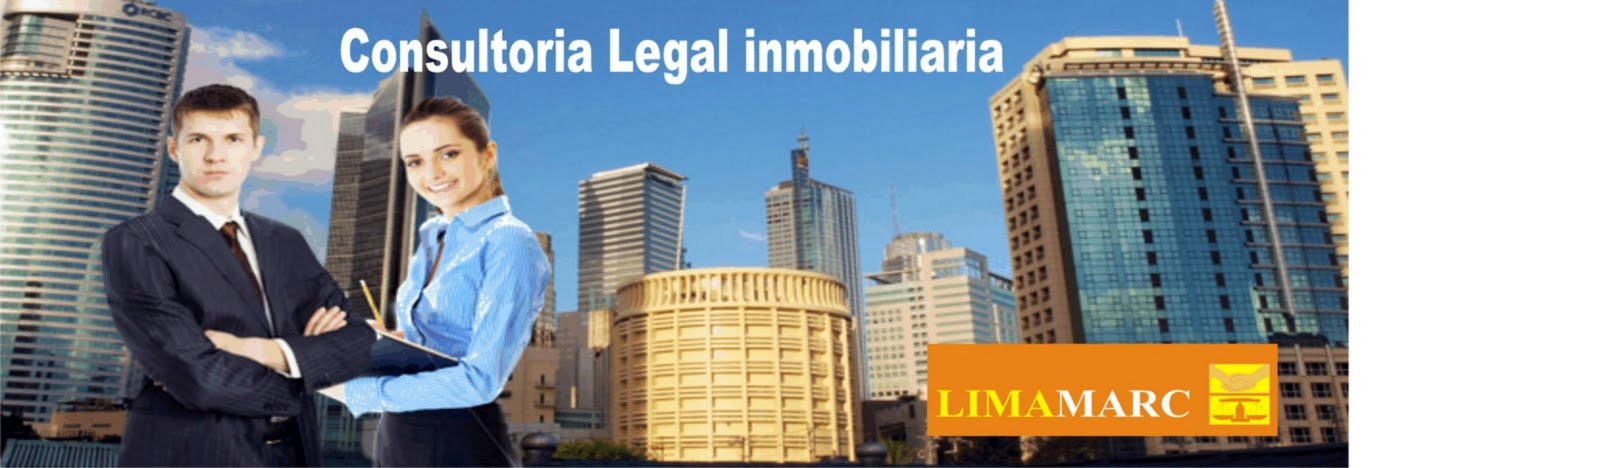 Consultoria  Legal inmobiliaria